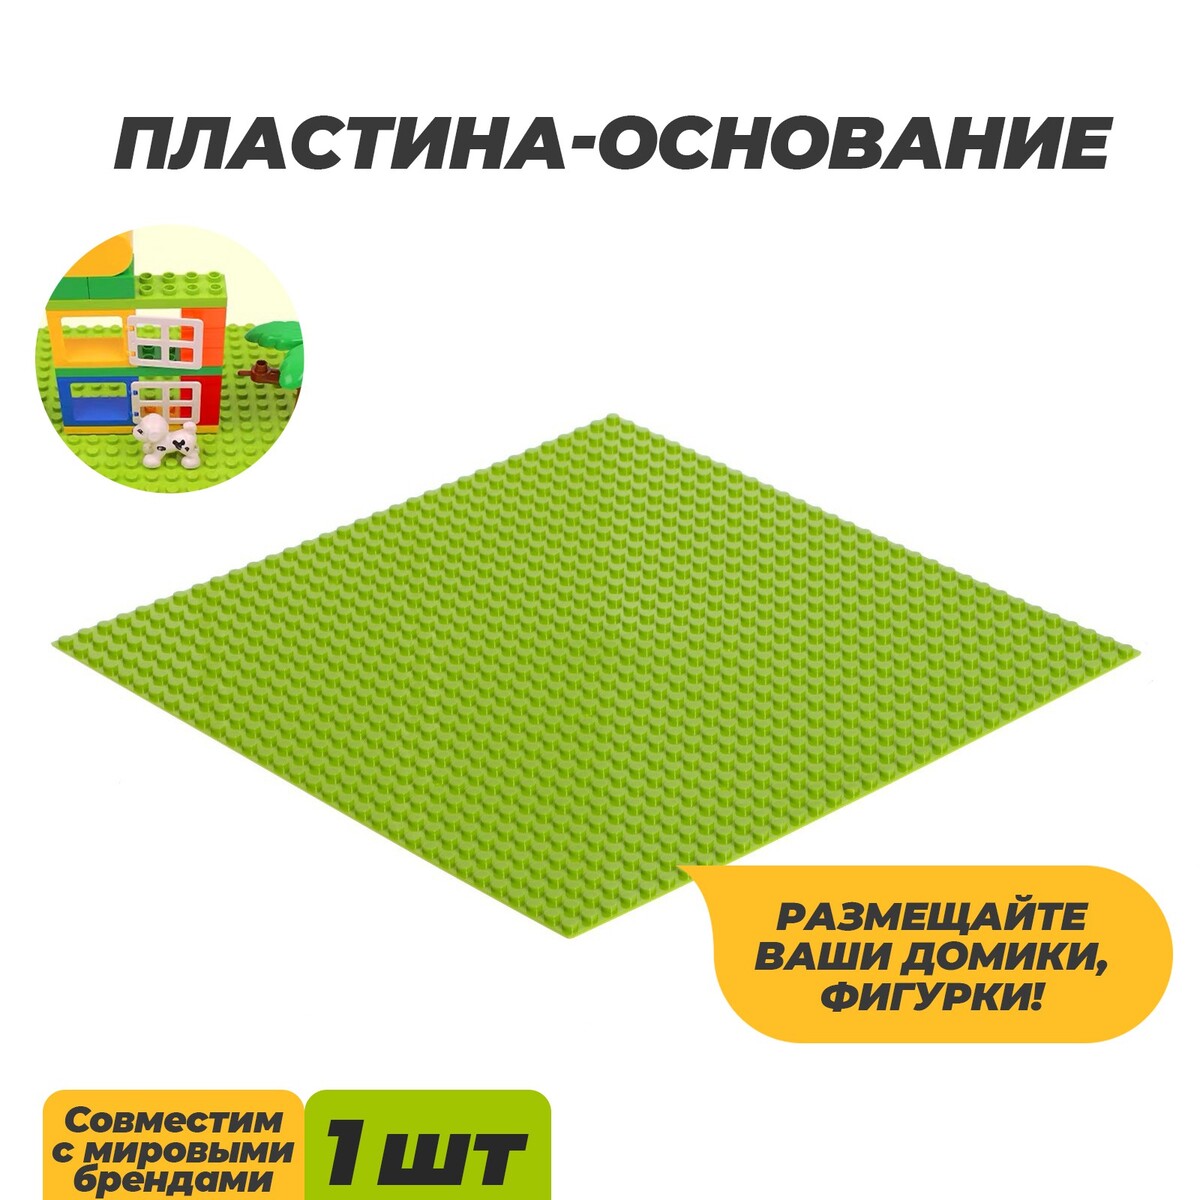 Пластина-основание для конструктора, 25,5 × 25,5 см, цвет салатовый пластина основание для конструктора 12 8 × 12 8 см салатовый